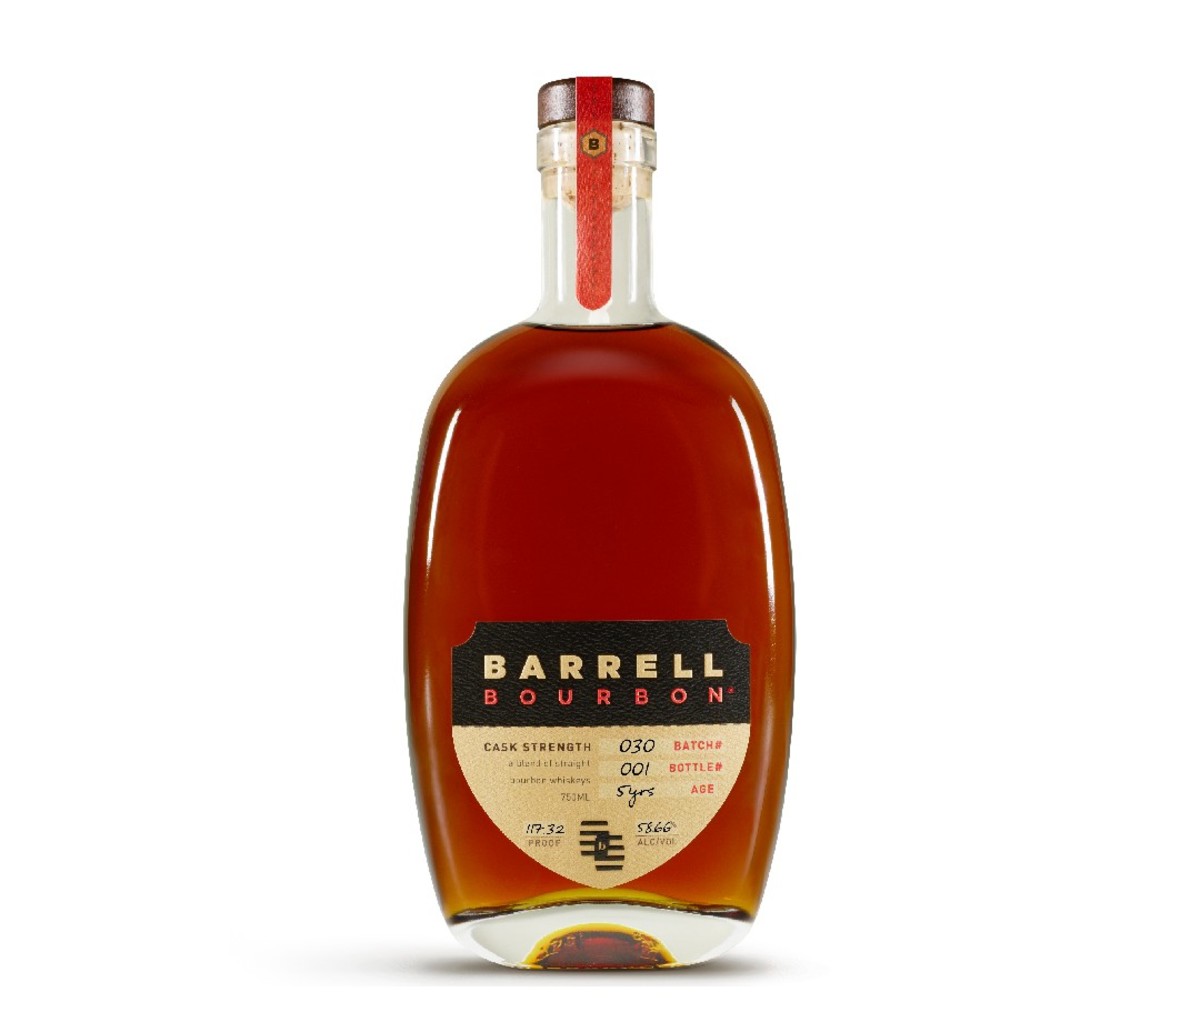 A bottle of Barrell Bourbon.